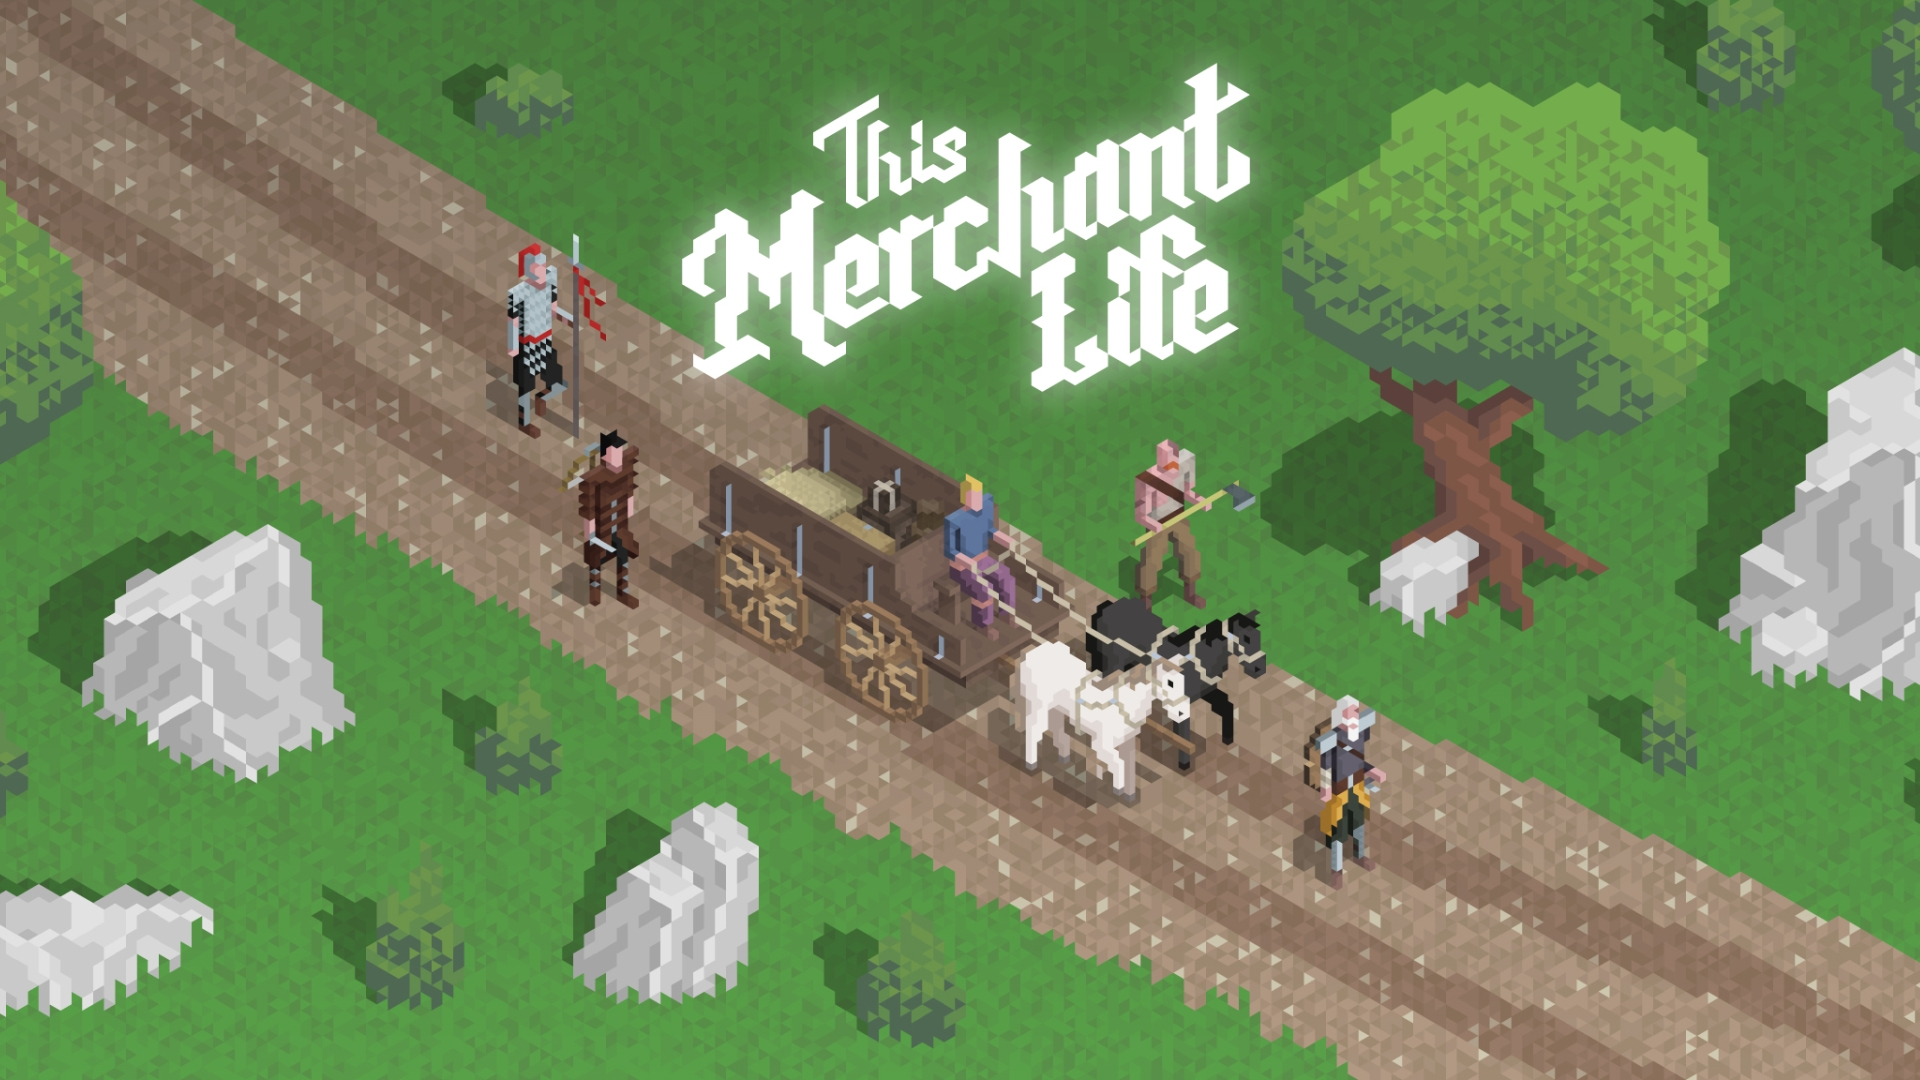 This Merchant Life. Игра Horse Life. Merchant игра. Great Merchant игра. This game игра